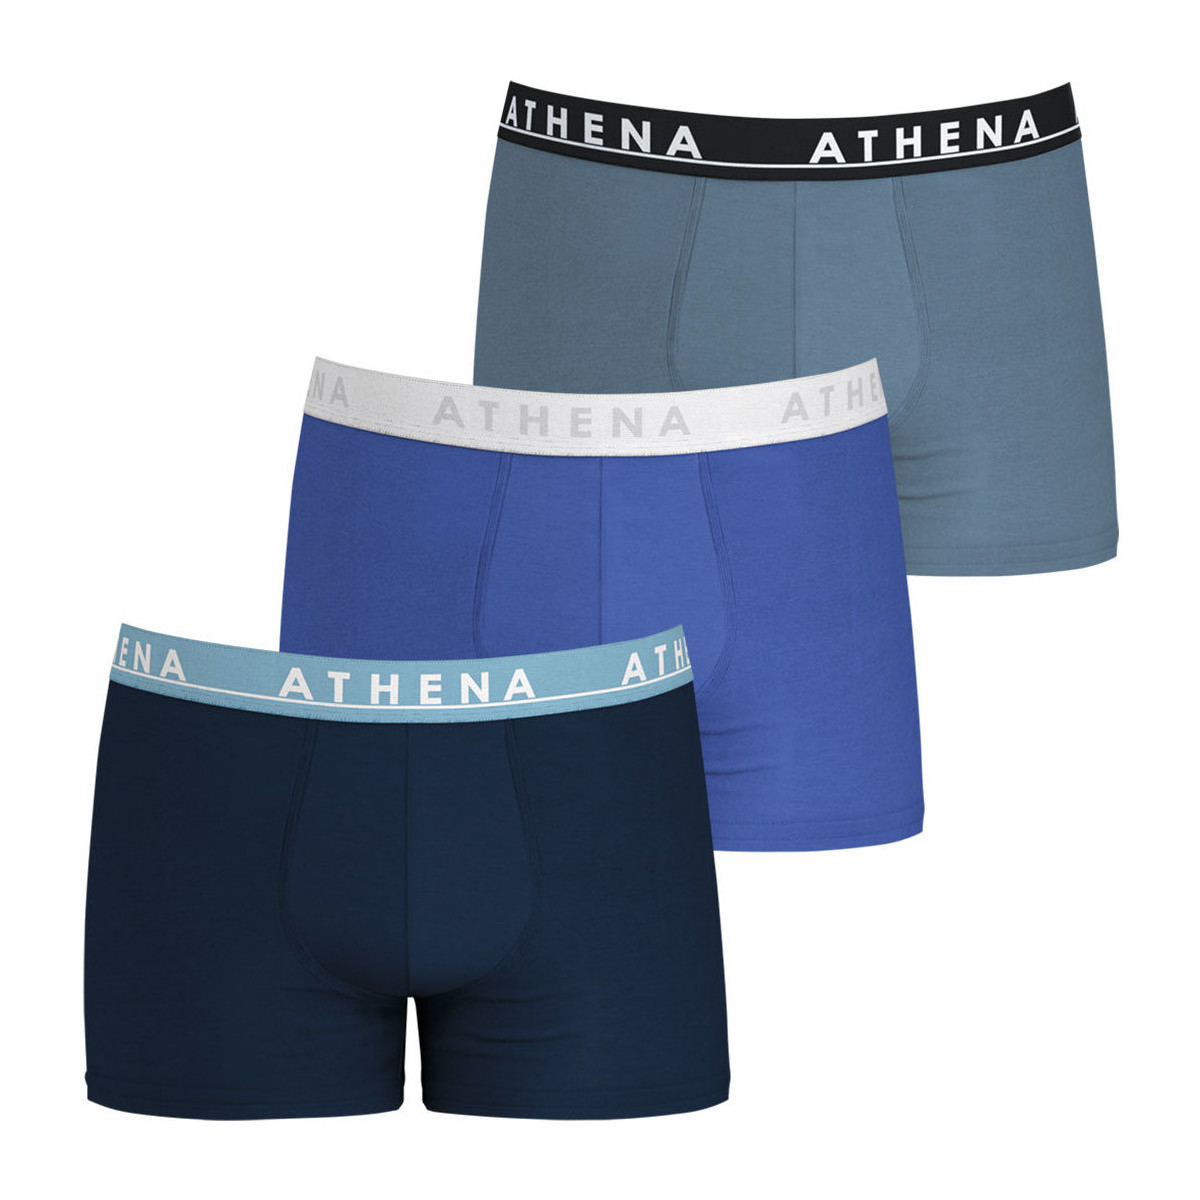 Sous-vêtements Homme Boxers Athena Lot de 3 boxers homme Easy Color Bleu